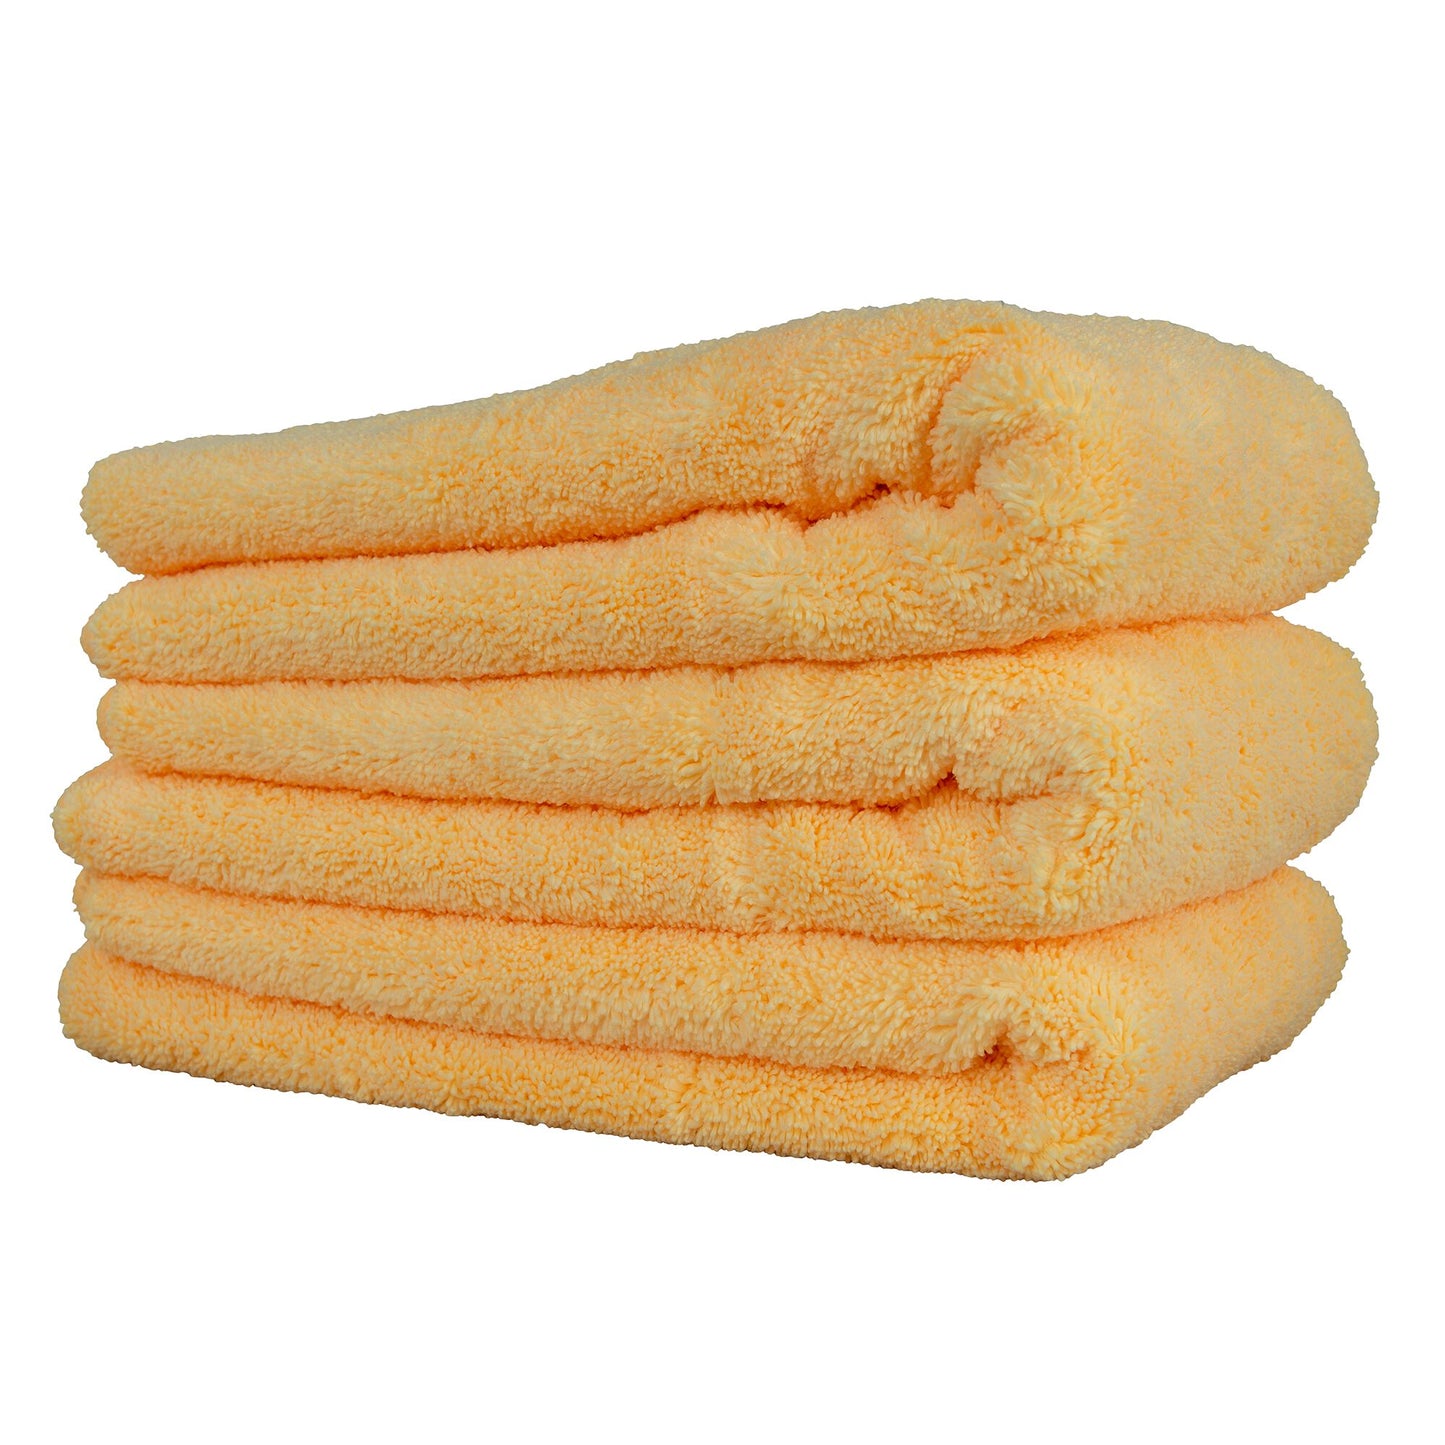  Bait Towel 3 Pack Orange Fishing Towels